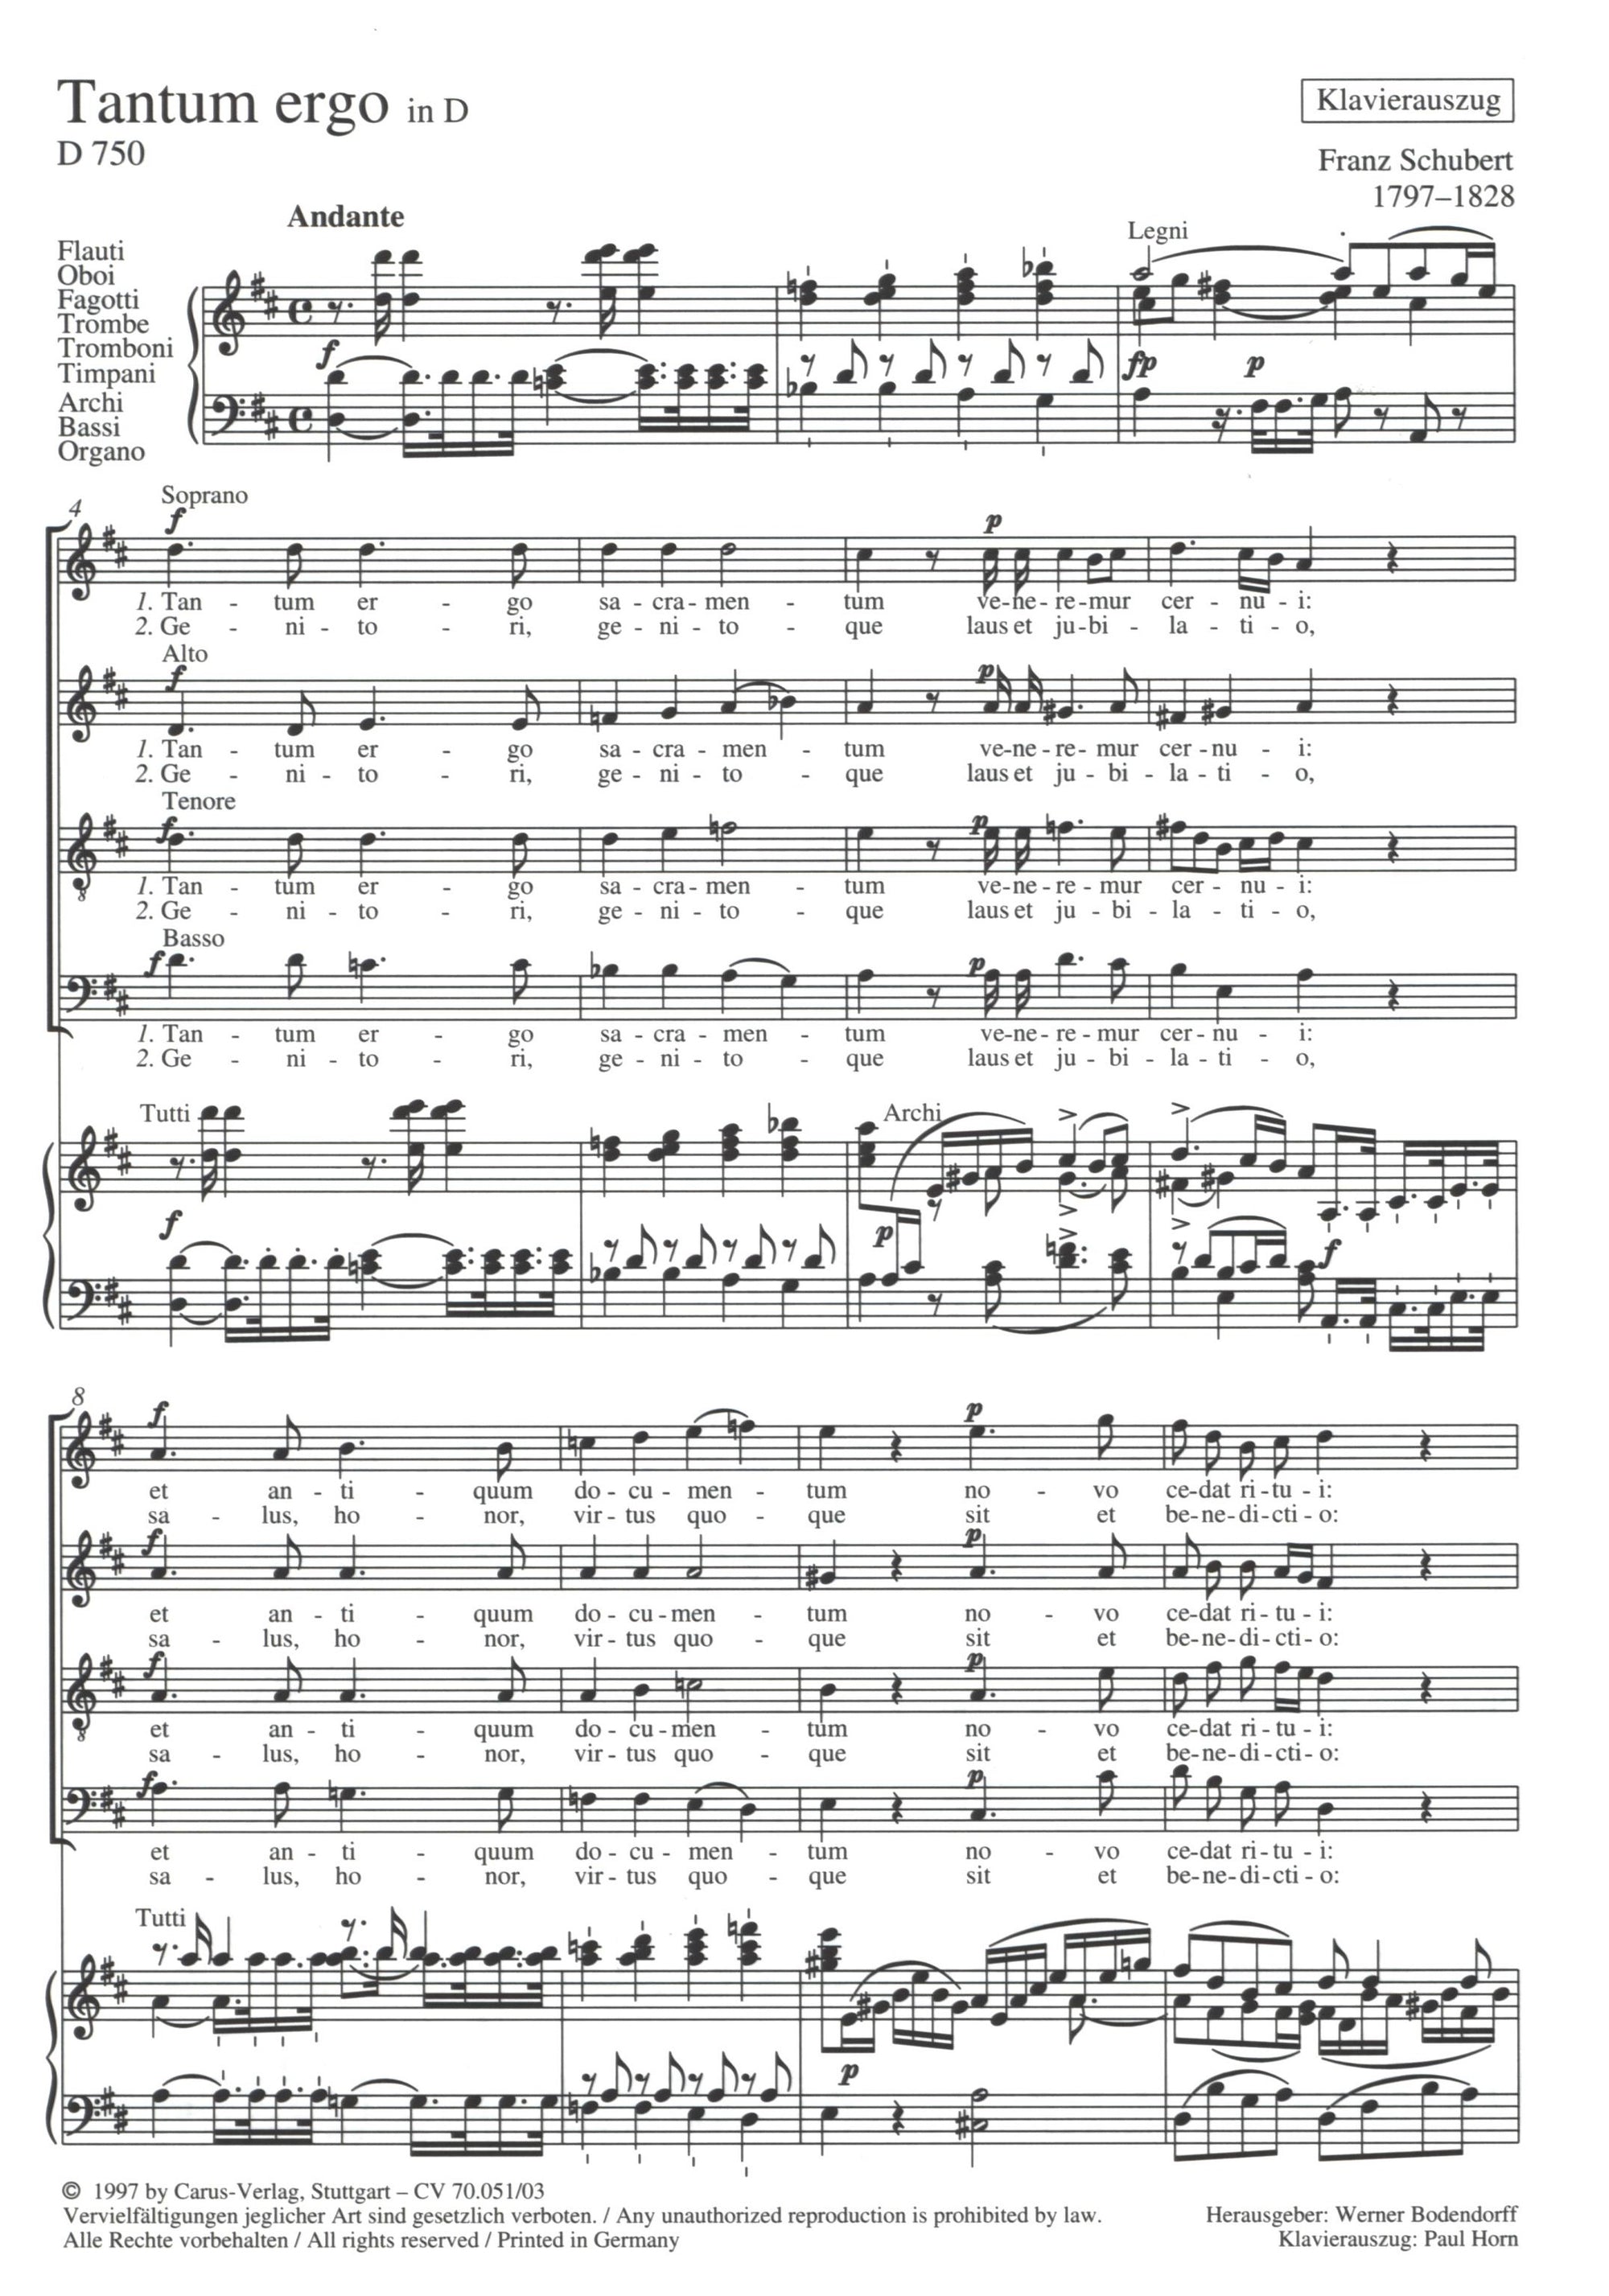 Schubert: Tantum ergo in D Major, D. 750